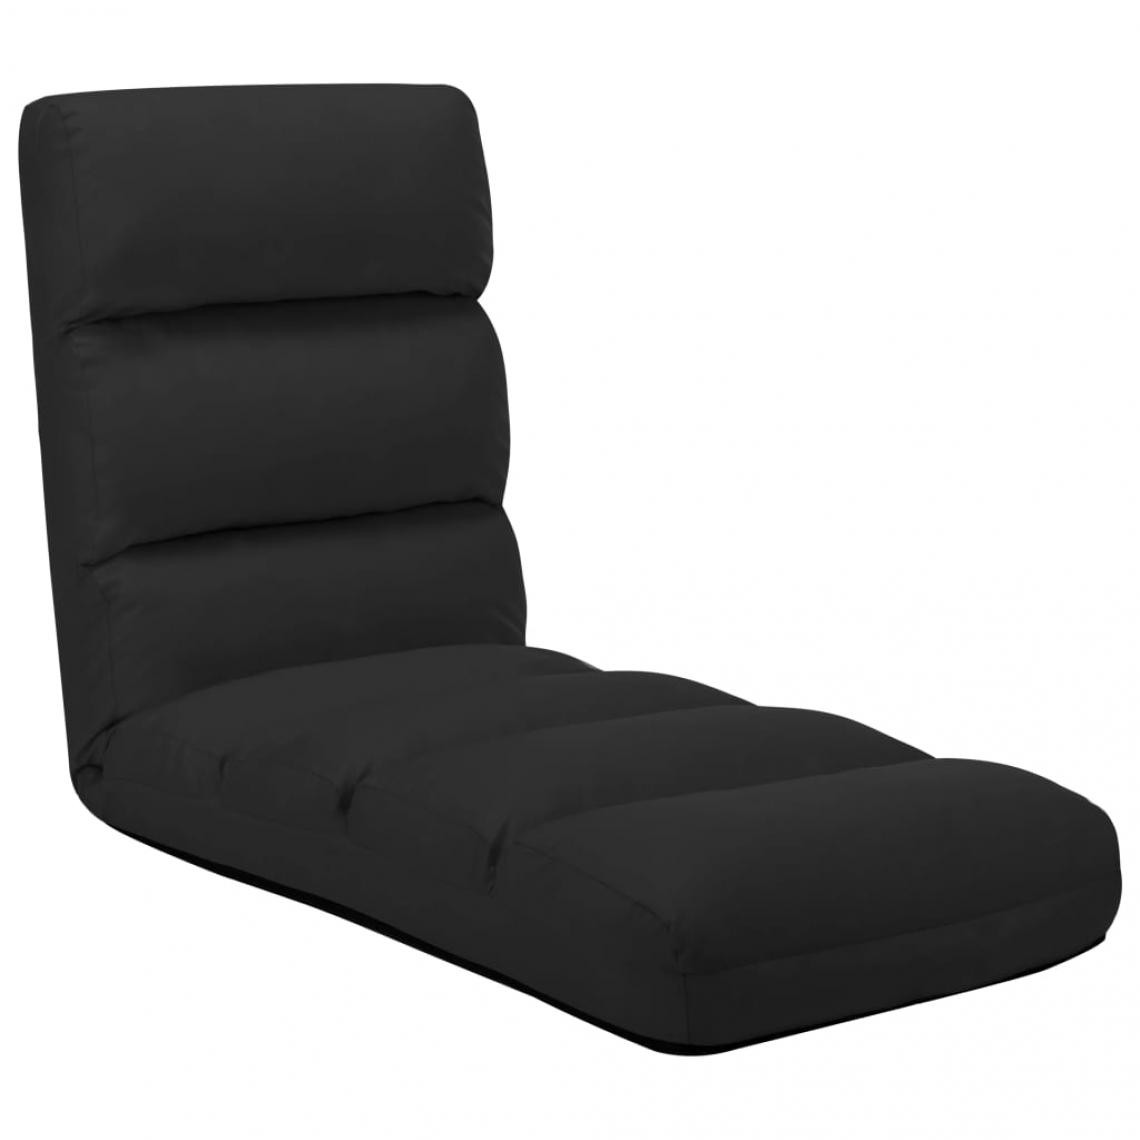 Vidaxl - vidaXL Chaise pliable de sol Noir Similicuir - Transats, chaises longues